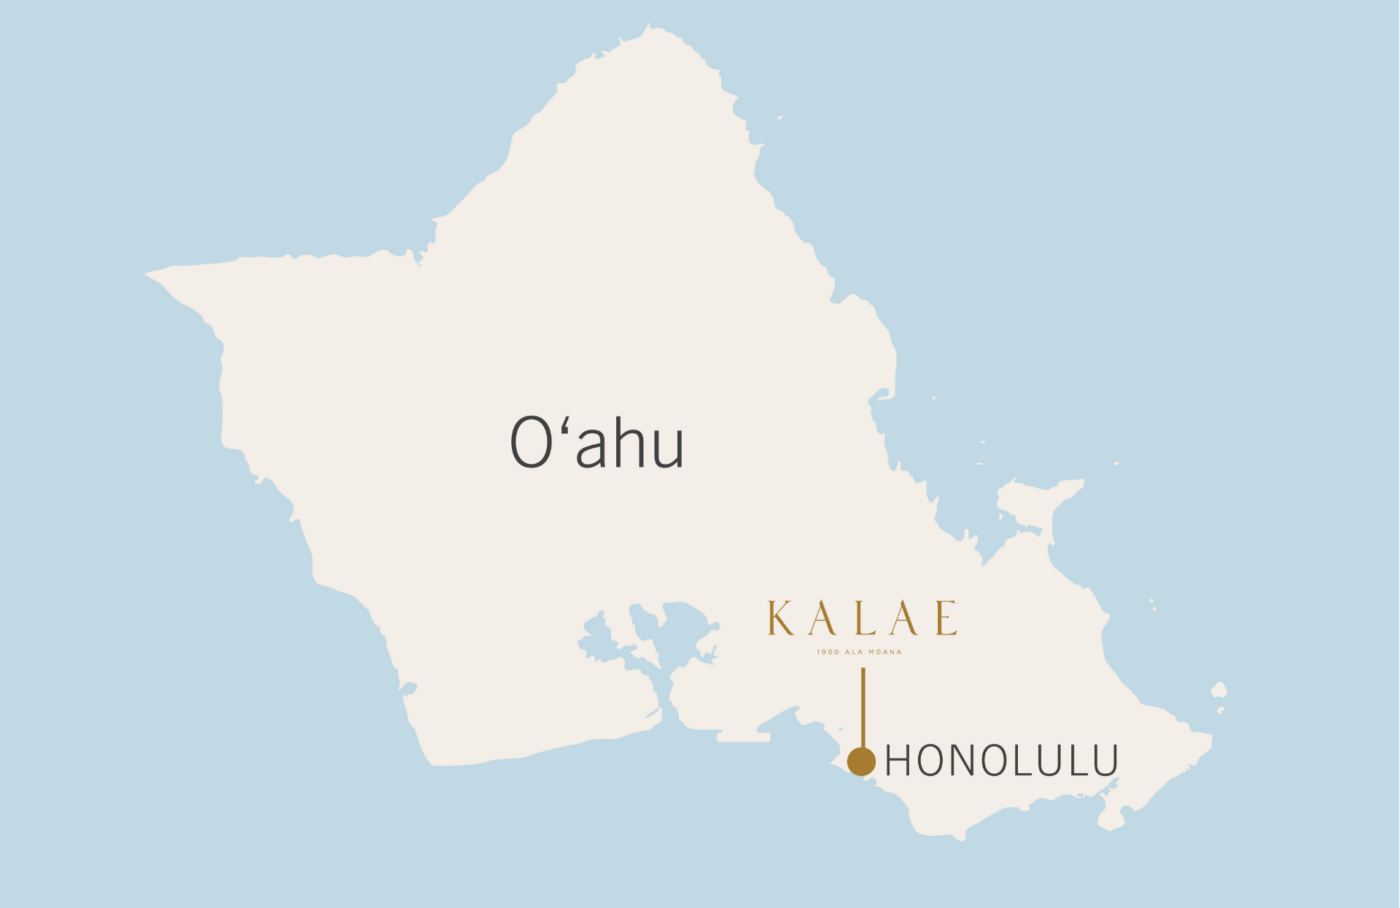 欧胡岛地图上有卡莱和檀香山的叫法。